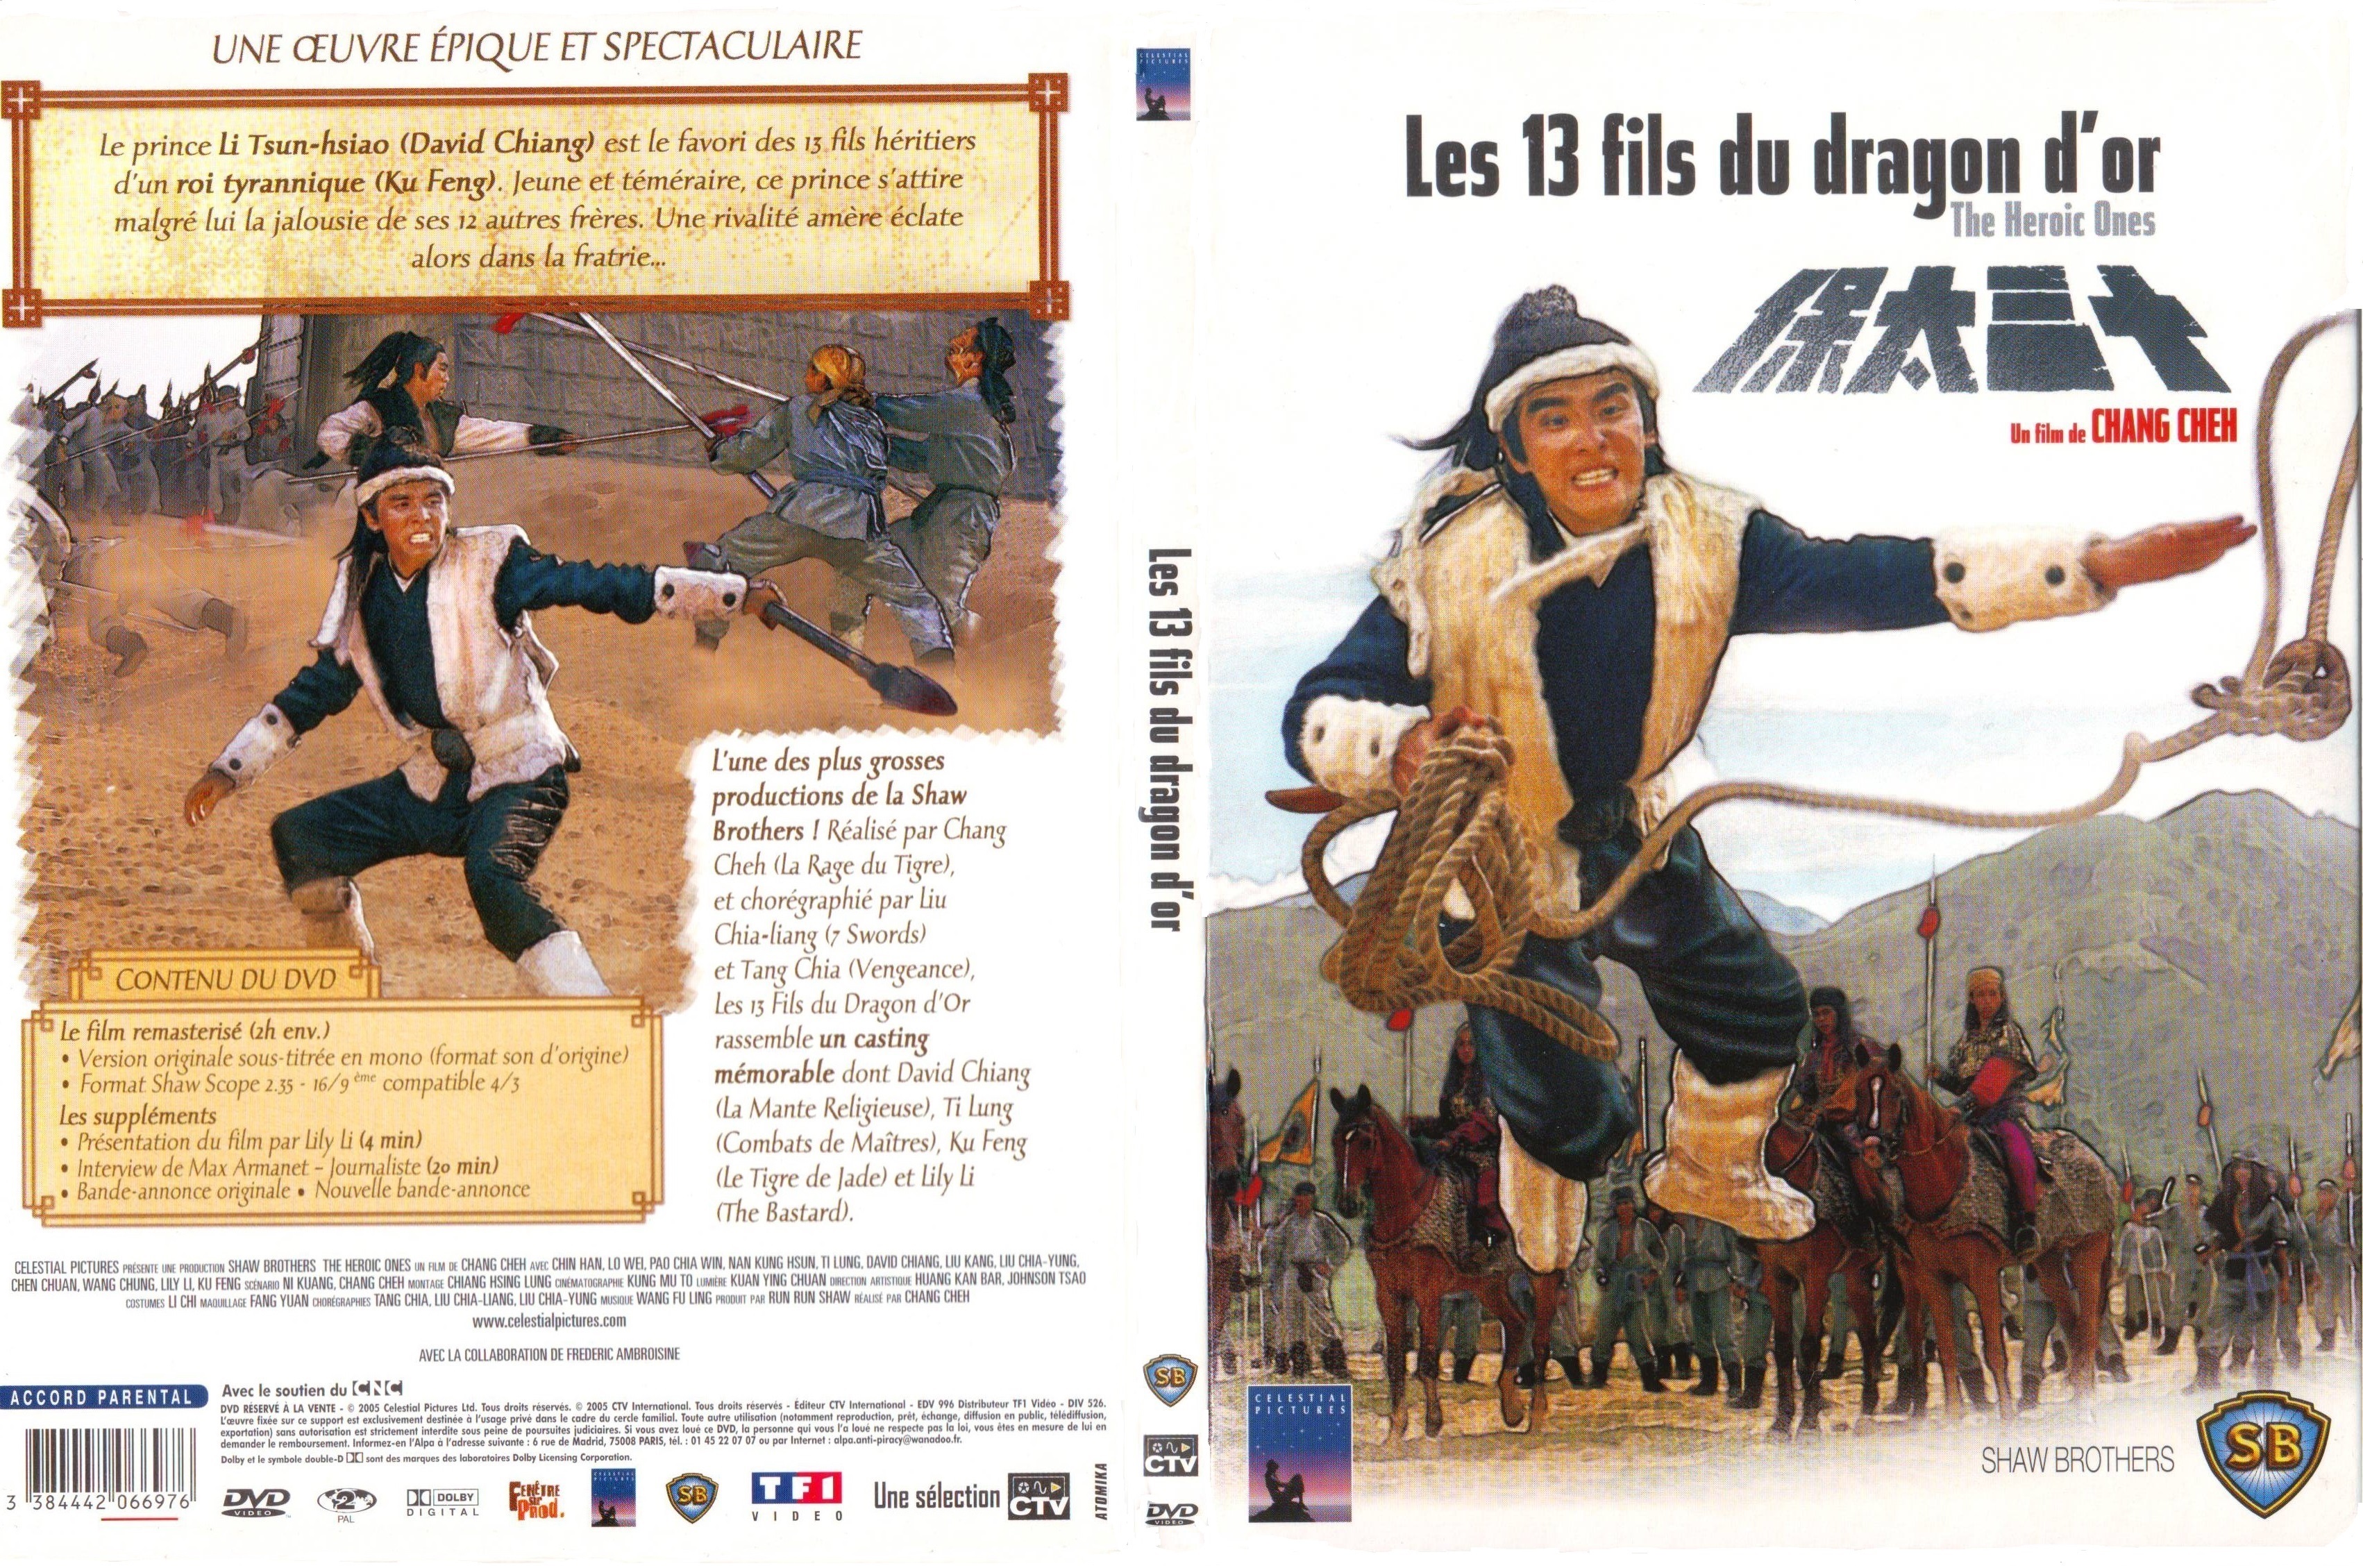 Jaquette DVD Les 13 fils du dragon d